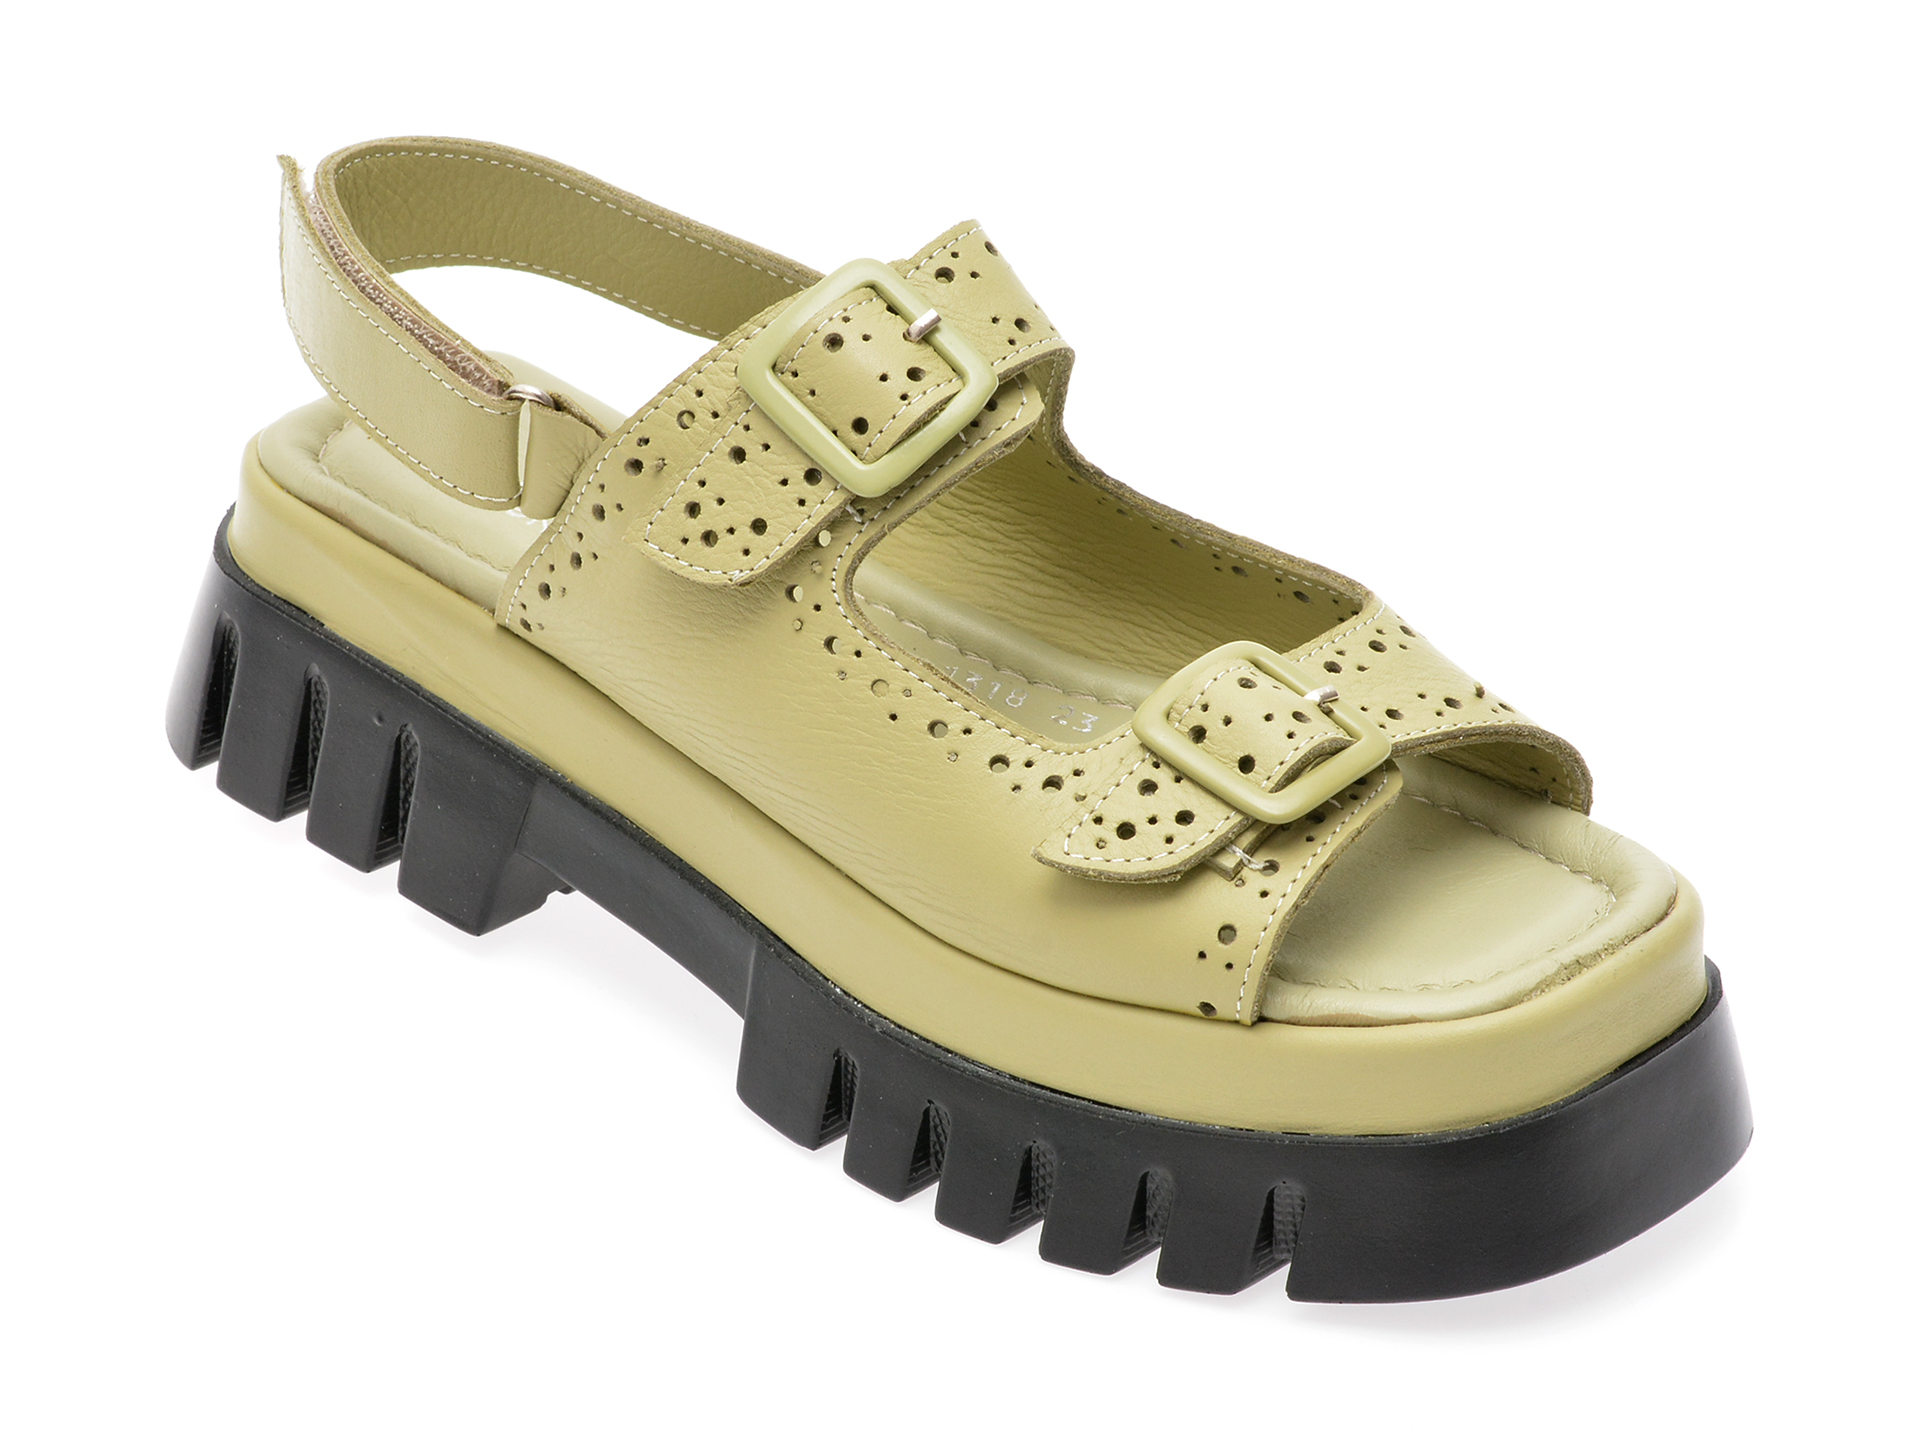 Sandale FERA DONNA verzi, 13189, din piele naturala /femei/sandale imagine noua